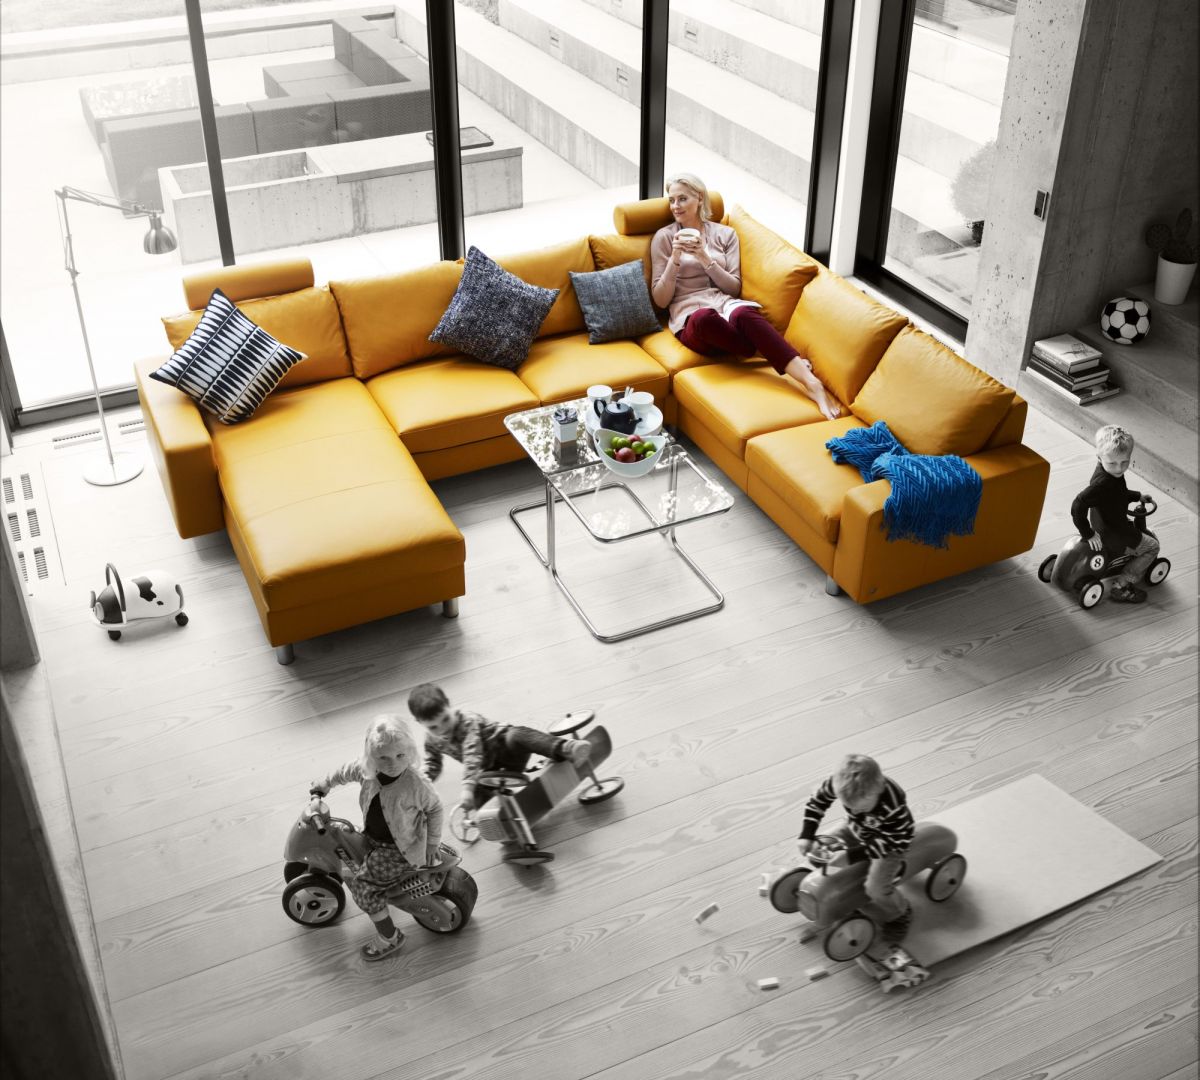 Sofa Stressless wyróżnia się piękną ciepłą kolorystyką. Modułowy meble pozwala na tworzenie różnorodnych kompozycji. Fot. Ekornes